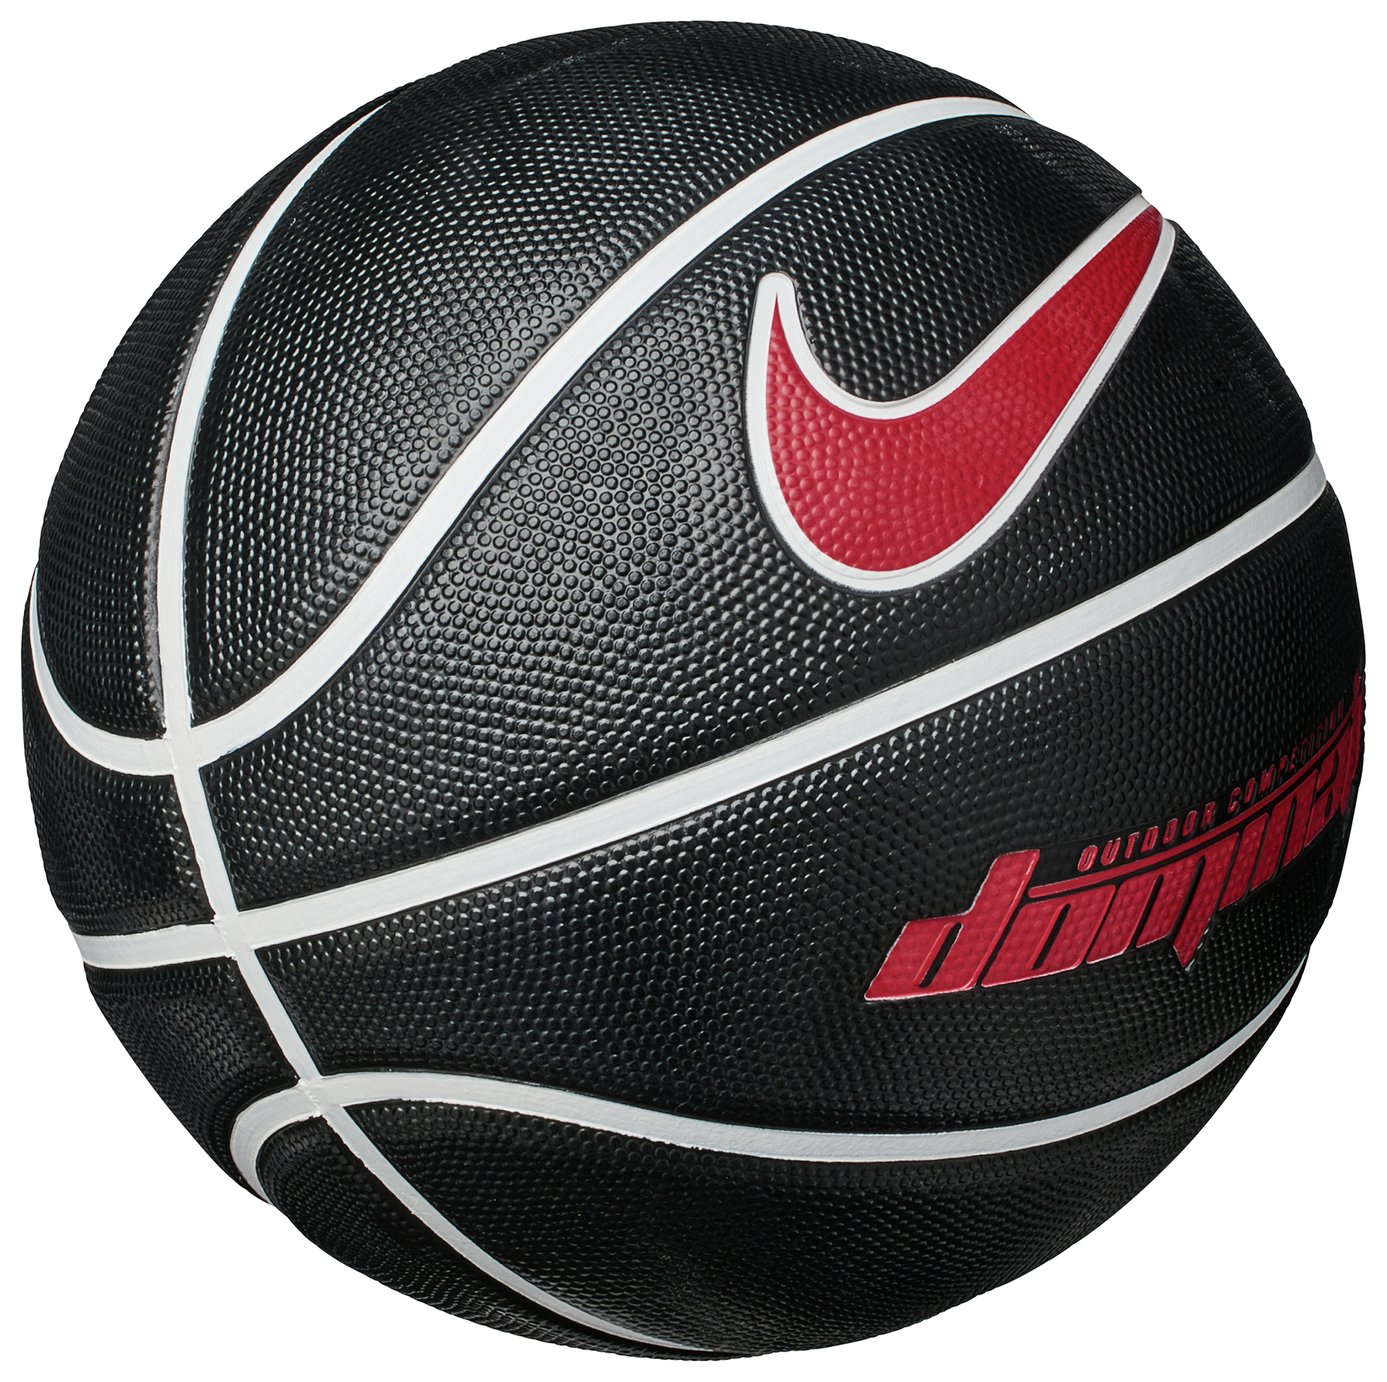 Buy Nike Dominate Size 7 Basketball 